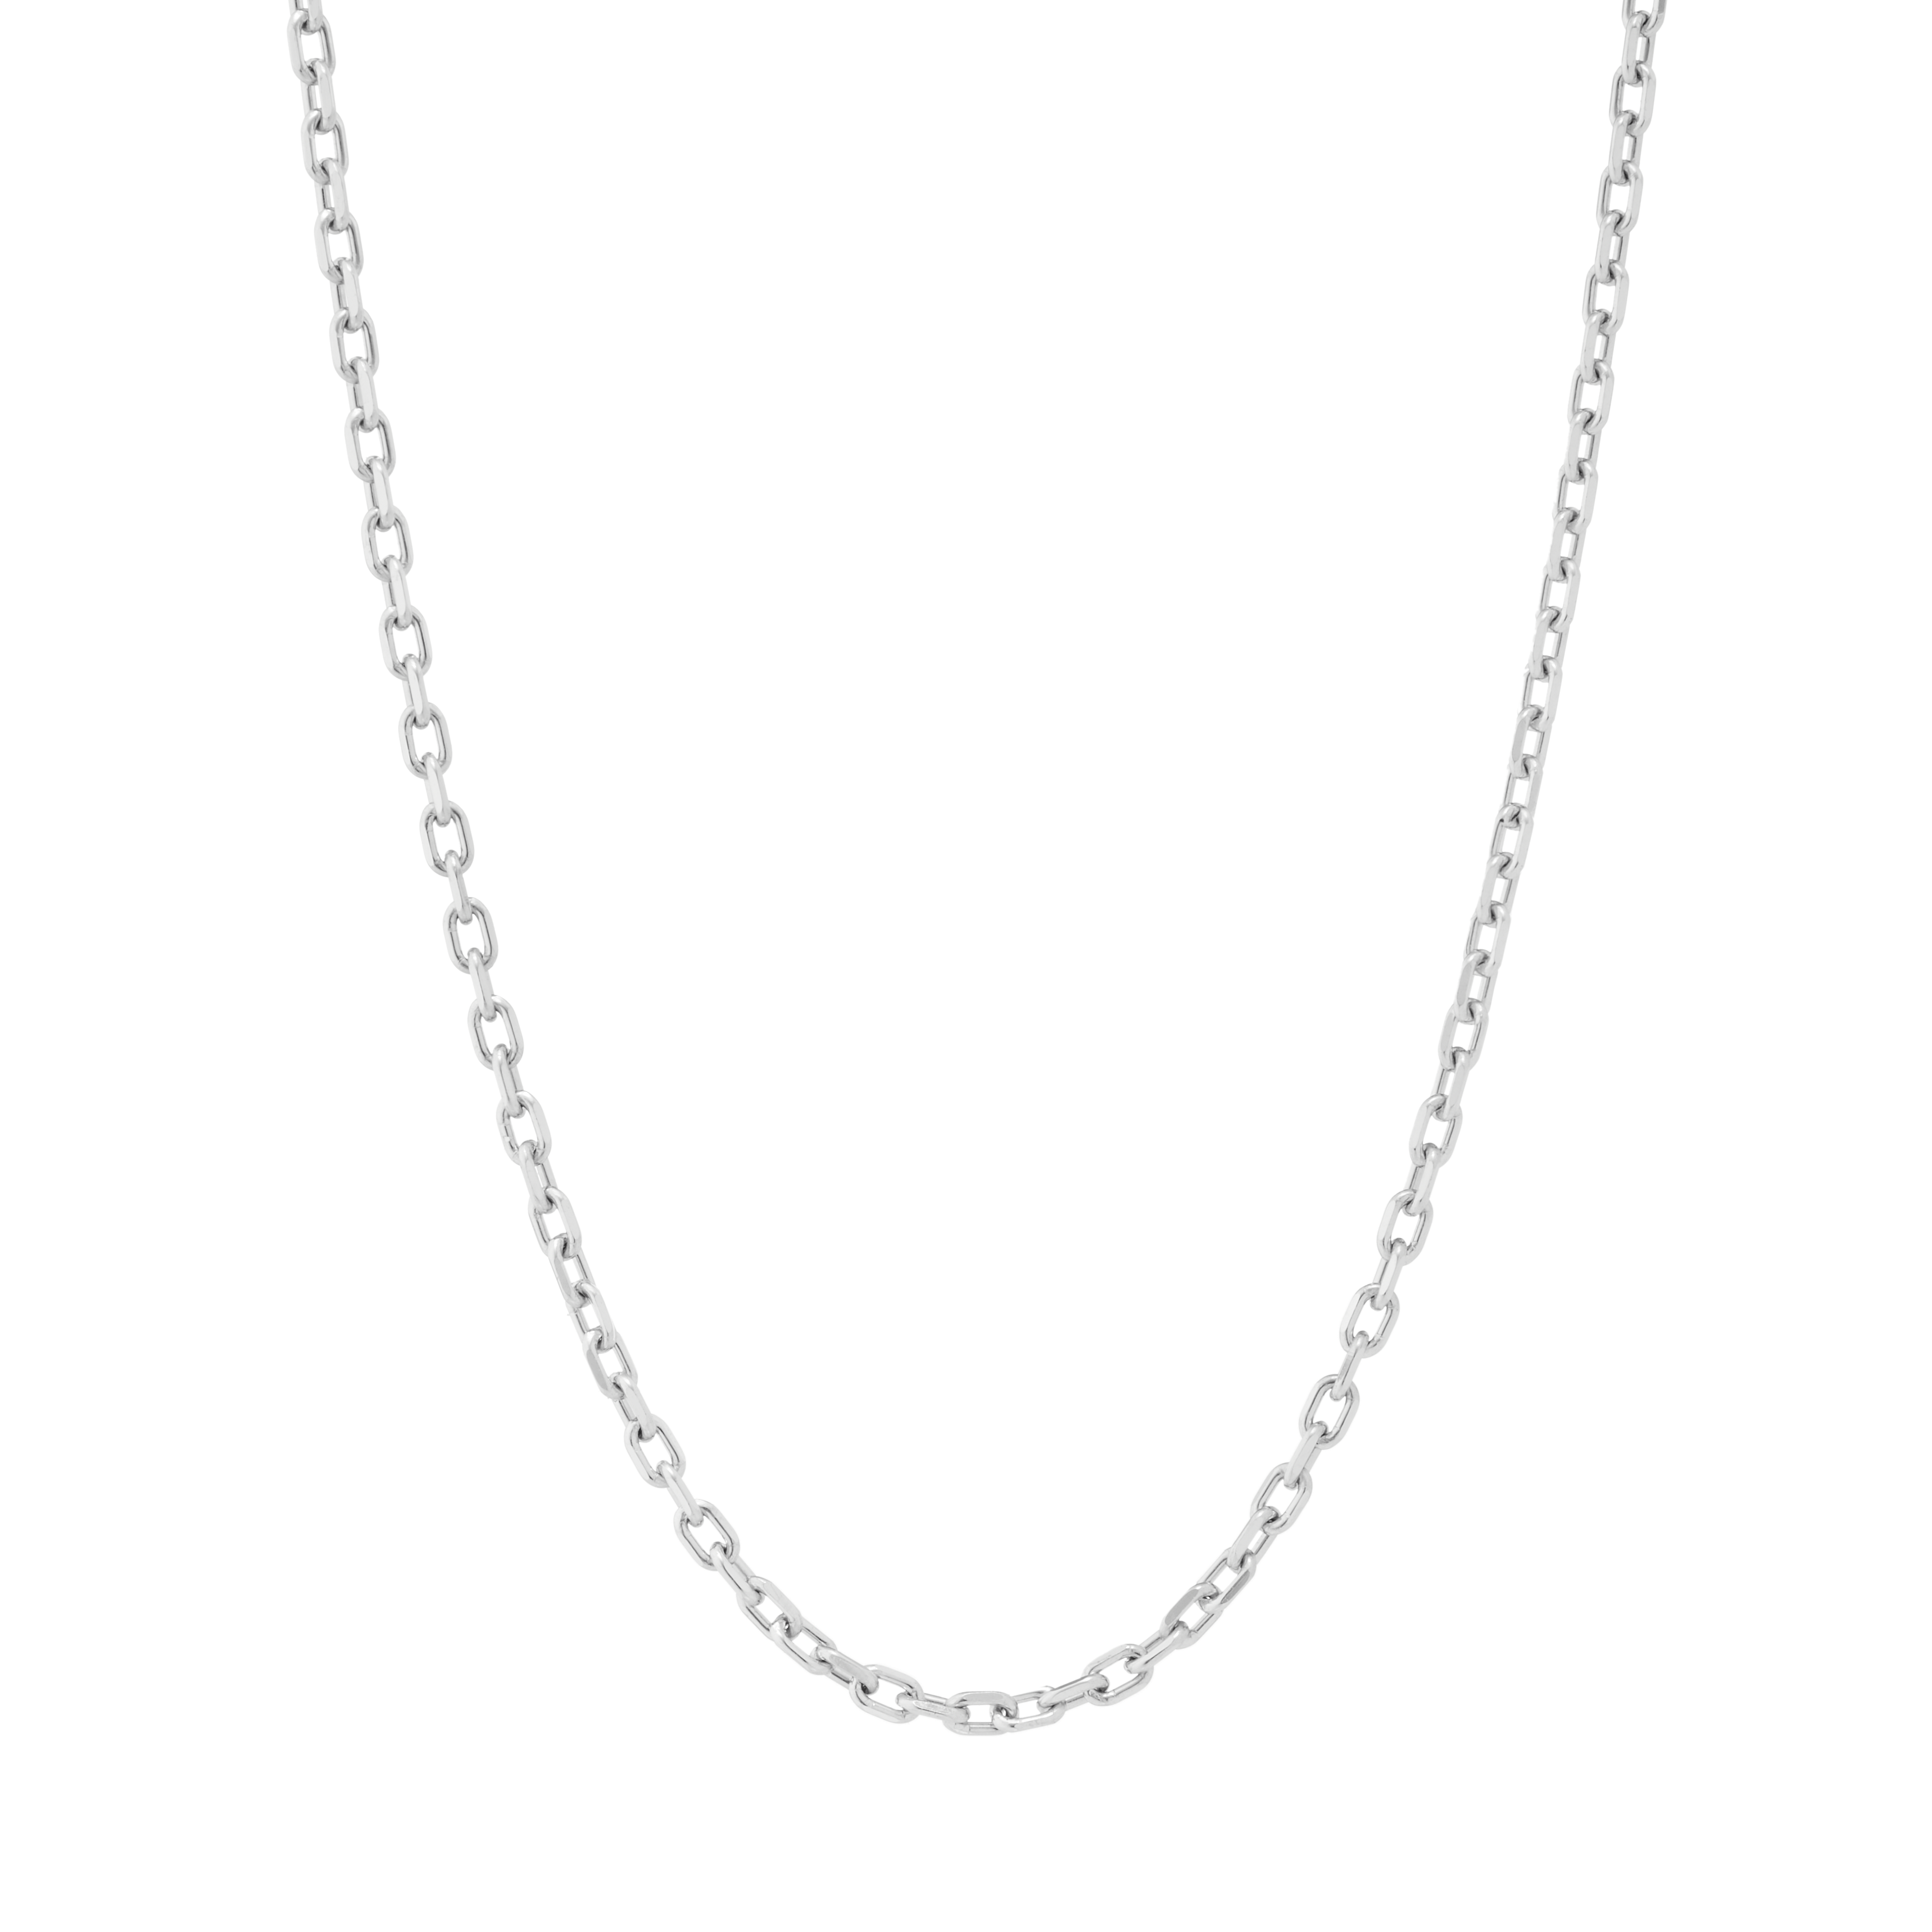 Shop Platinum Necklace Chains Diamond Cut Cable Chain Necklace